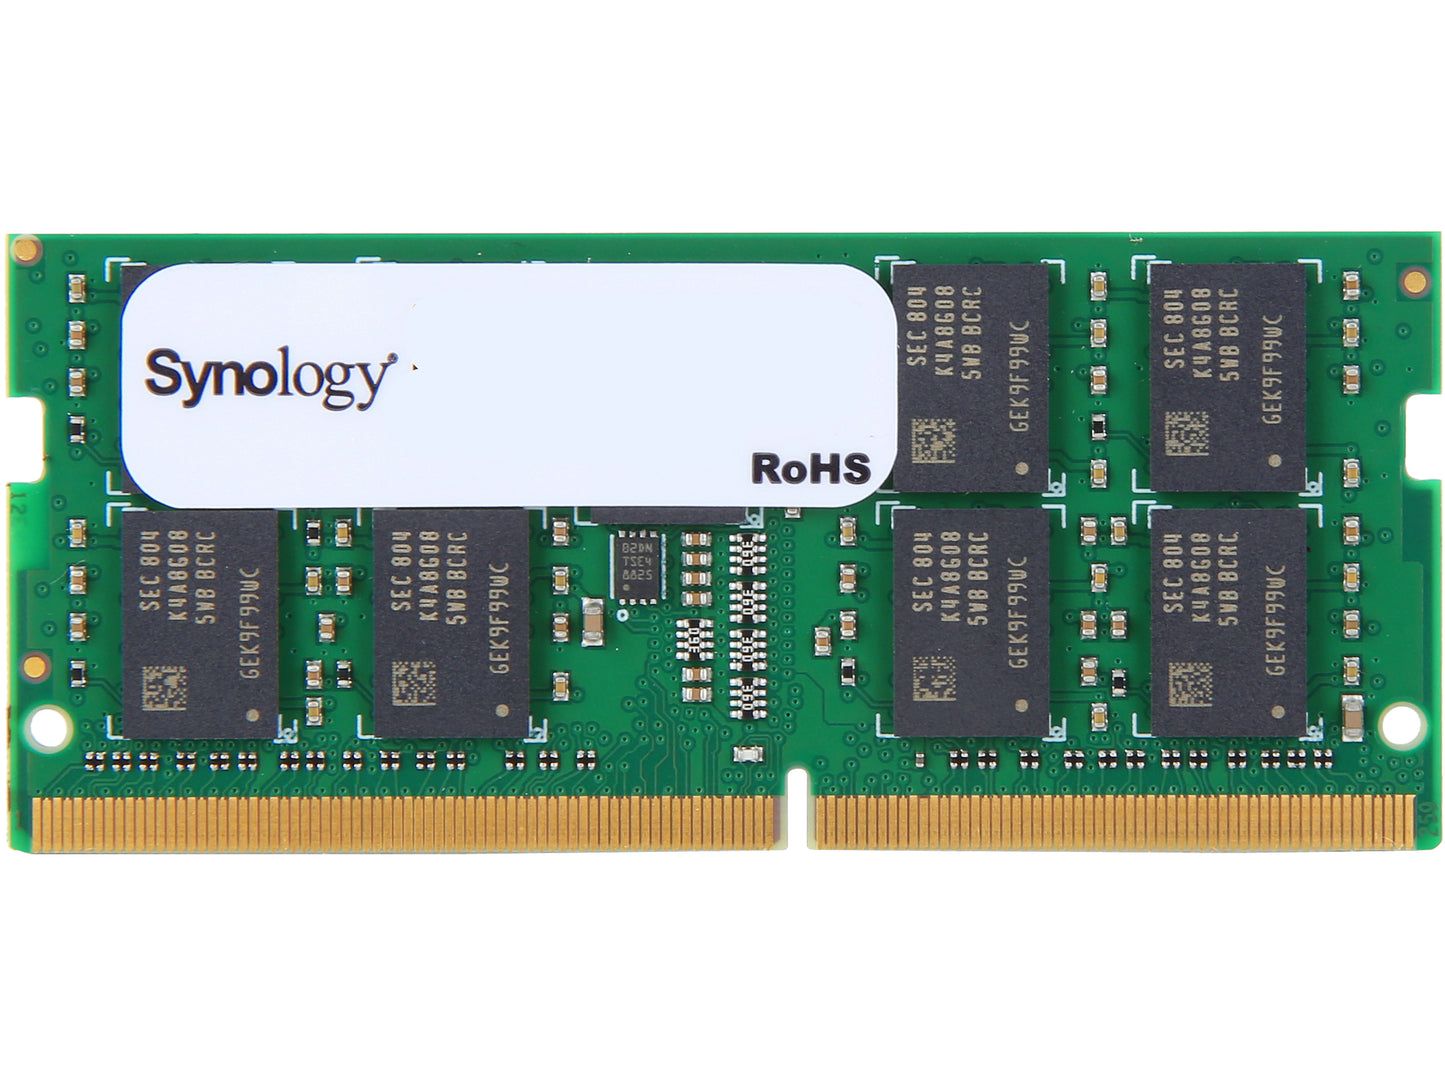 Synology 16GB DDR4 SDRAM Memory Module - D4ECSO-2400-16G 339.99